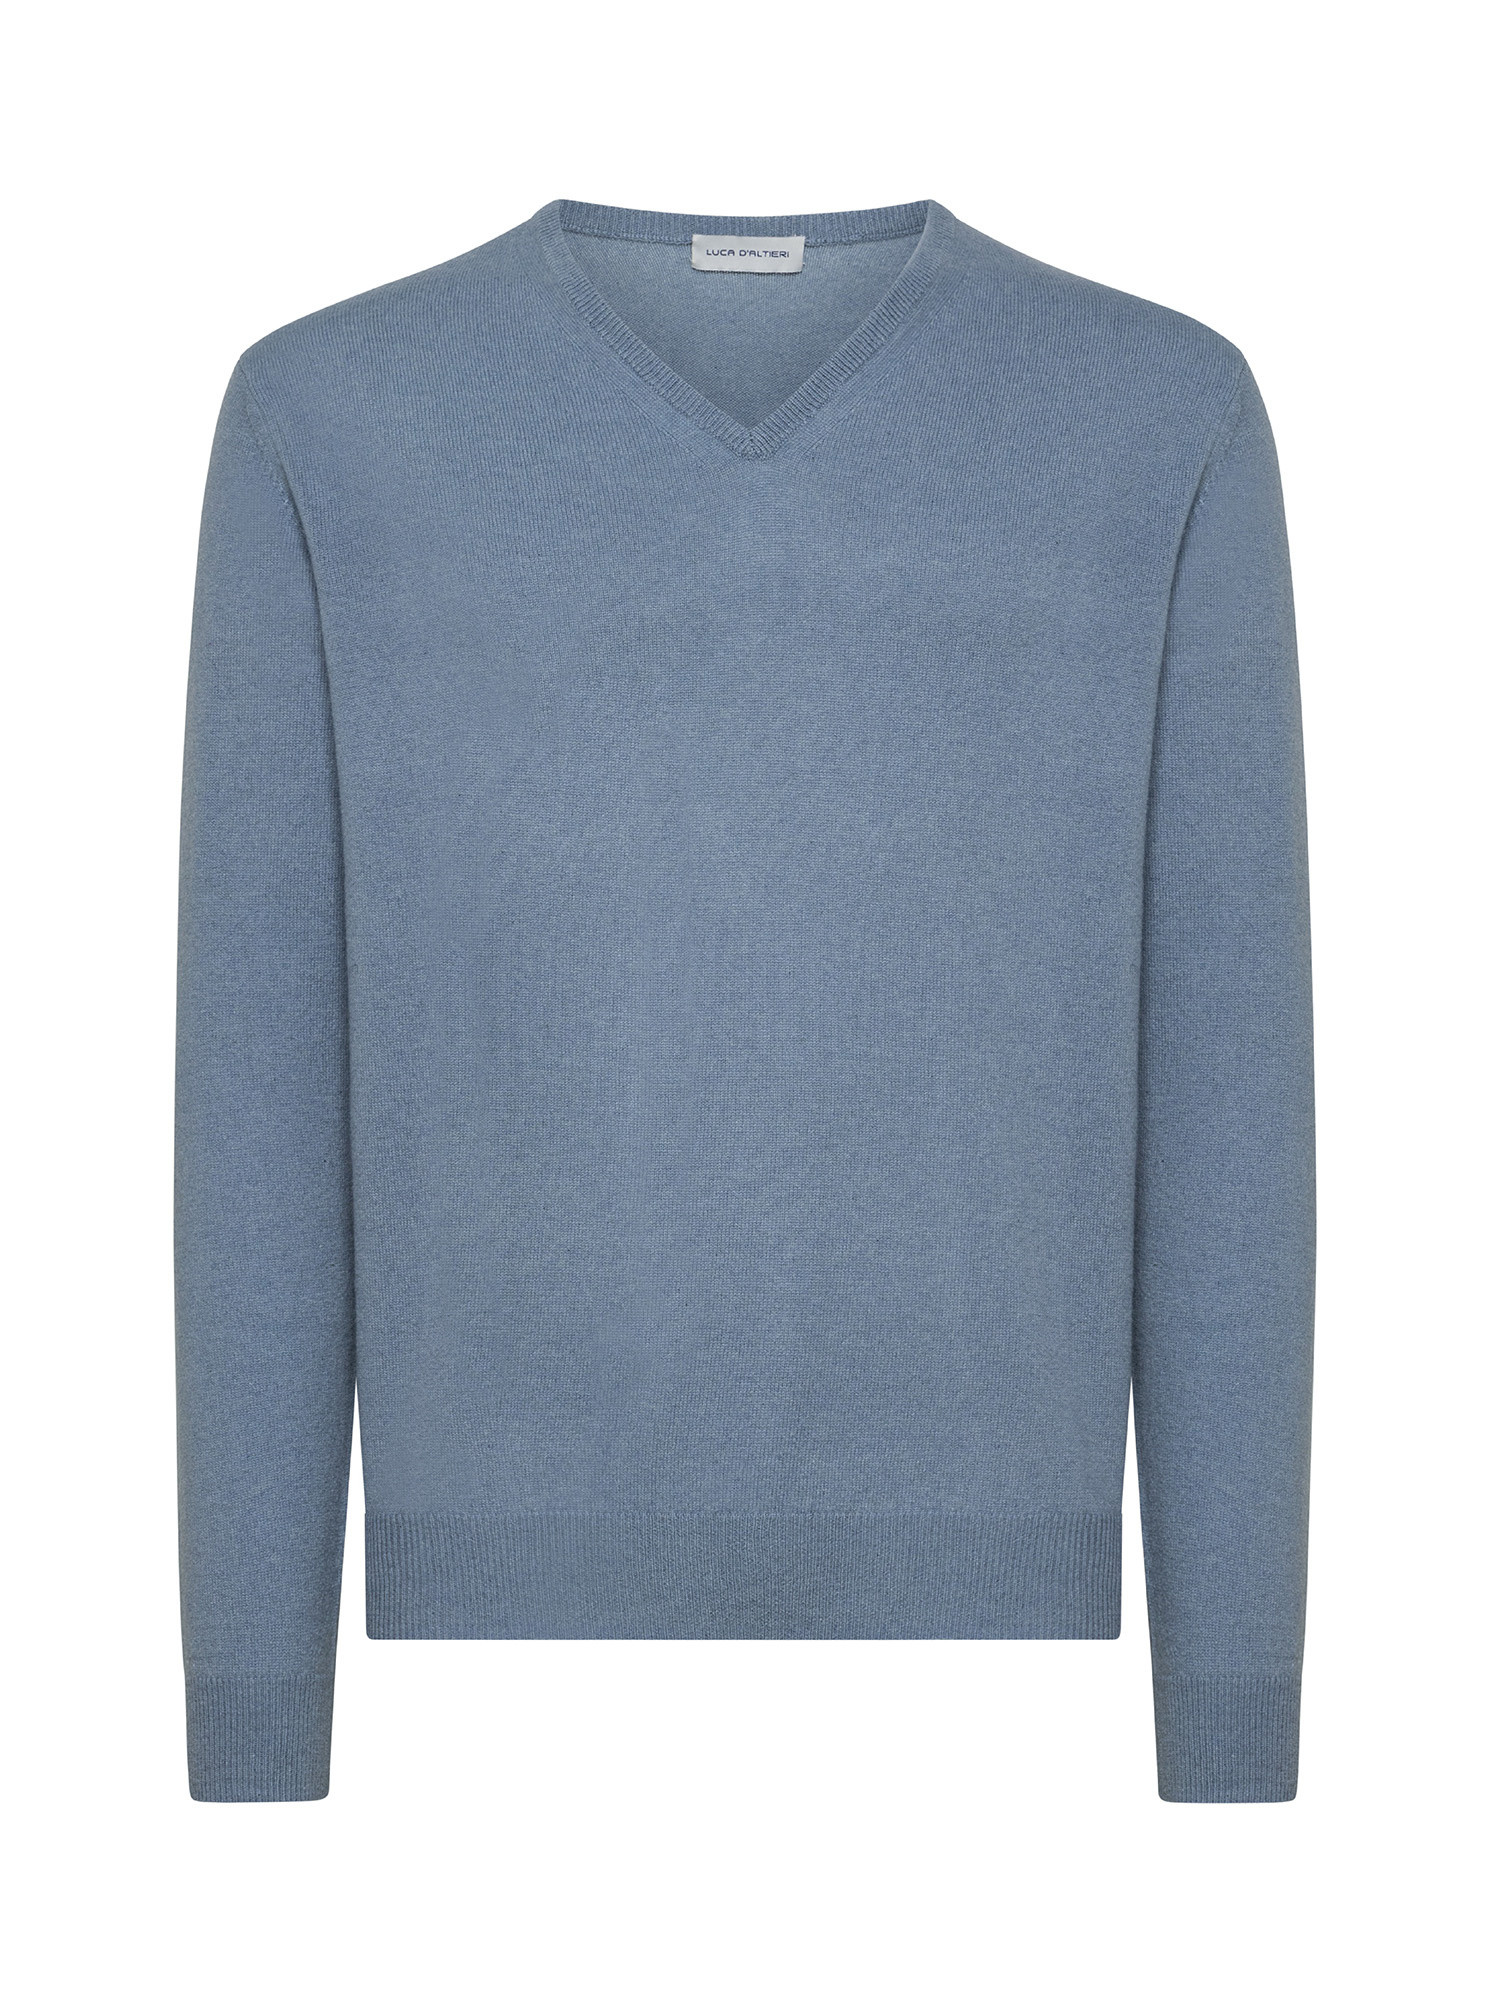 Пуловер с V-образным вырезом из чистого кашемира Luca D'Altieri, голубой пуловер с v образным вырезом из пушистого трикотажа xs бежевый